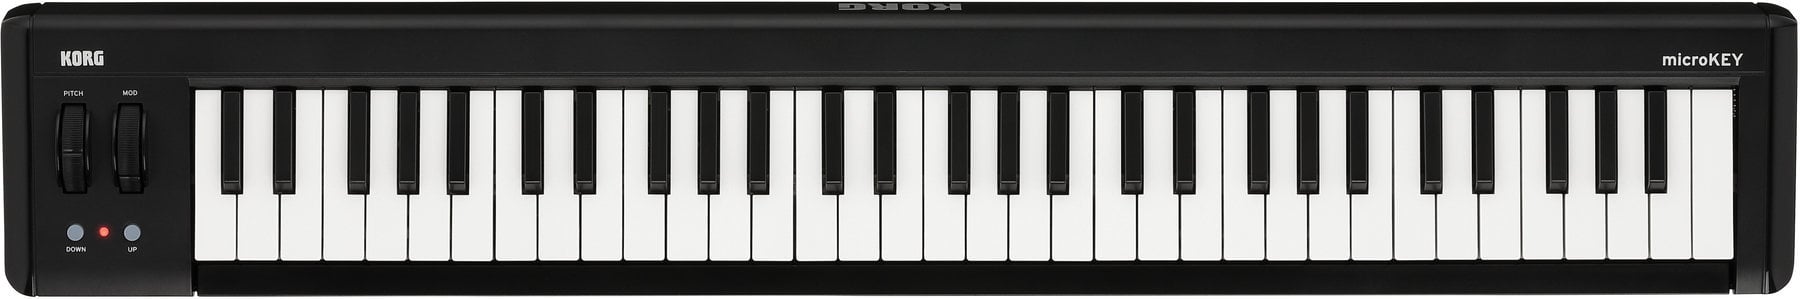 MIDI keyboard Korg MicroKEY Air 61